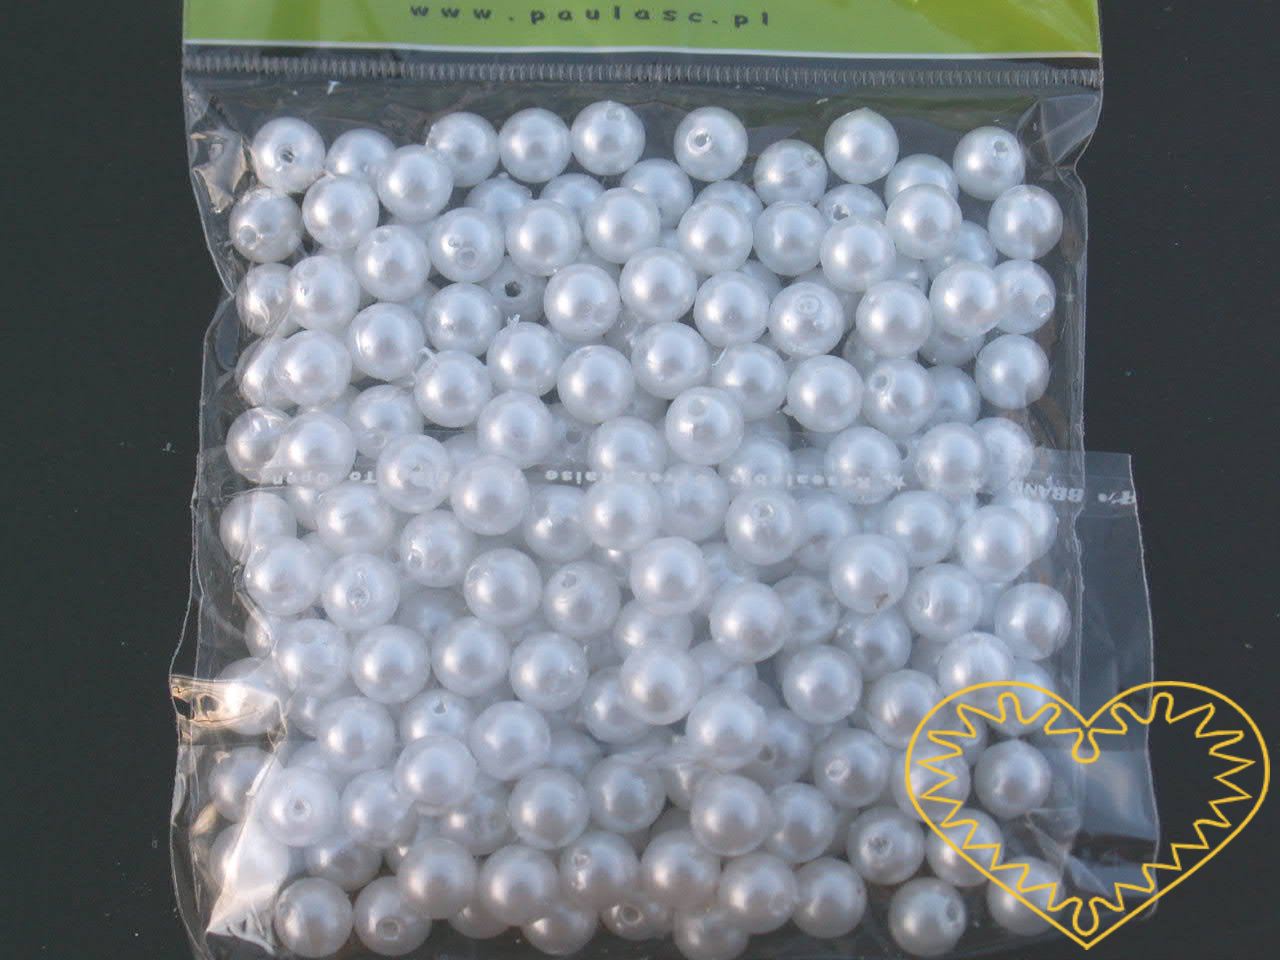 Bílé plastové perličky 8 mm - jedno balení má hmotnost 45 g. Korálky jsou vhodné pro tvoření s dětmi, pro výrobu bižuterie i dalších ozdob. Bílé perličky se také hodí k svatebním dekoracím a do svatebních kytic.